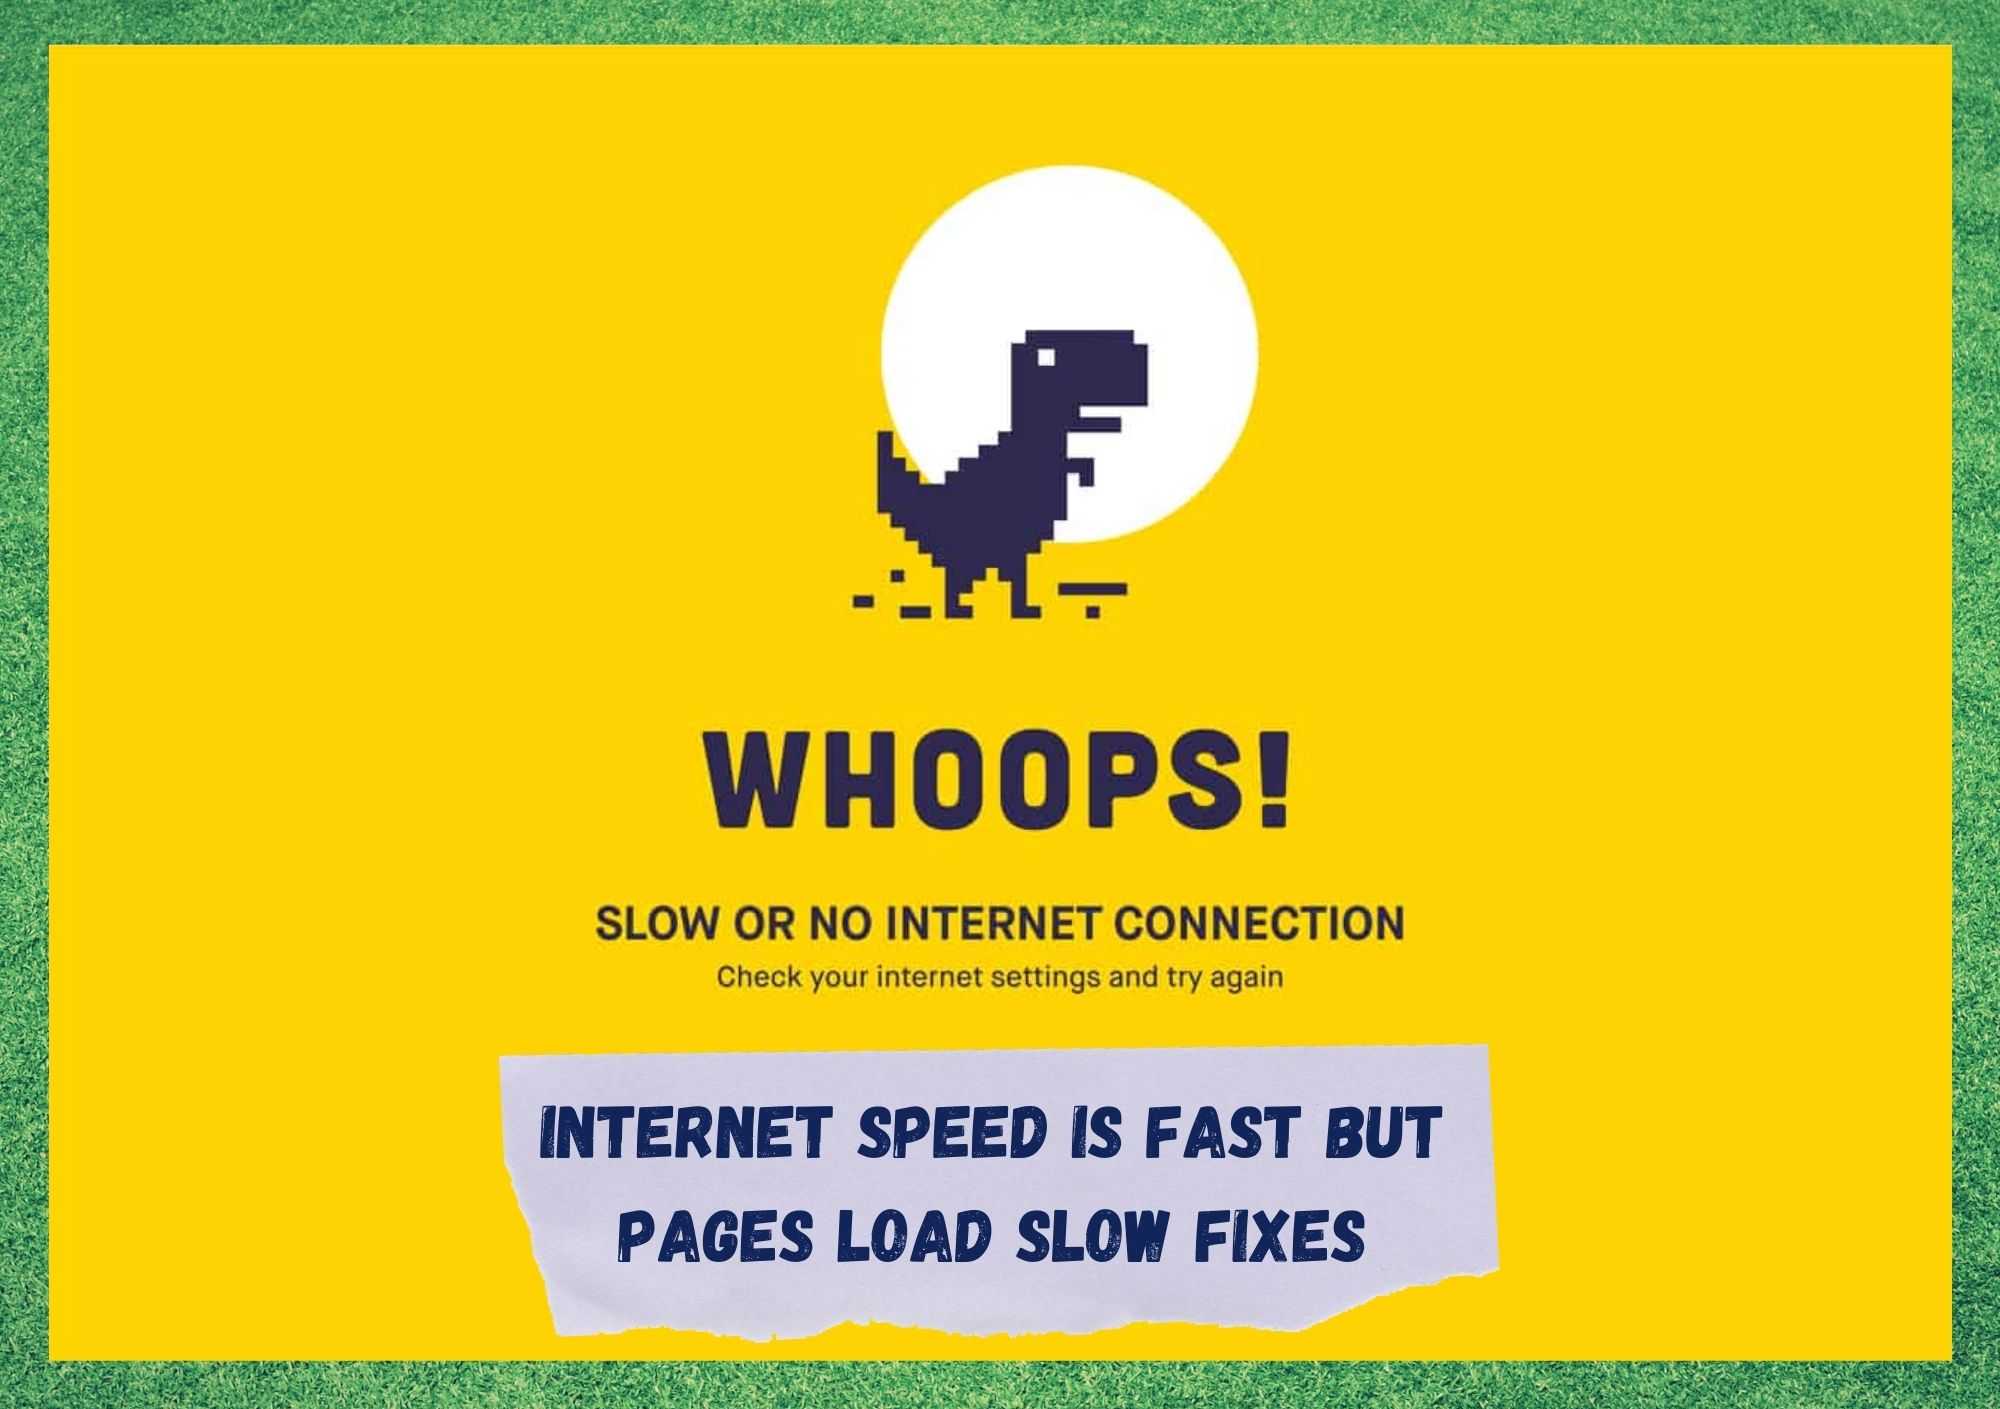 Скорость интернета высокая, но страницы загружаются медленно Исправление